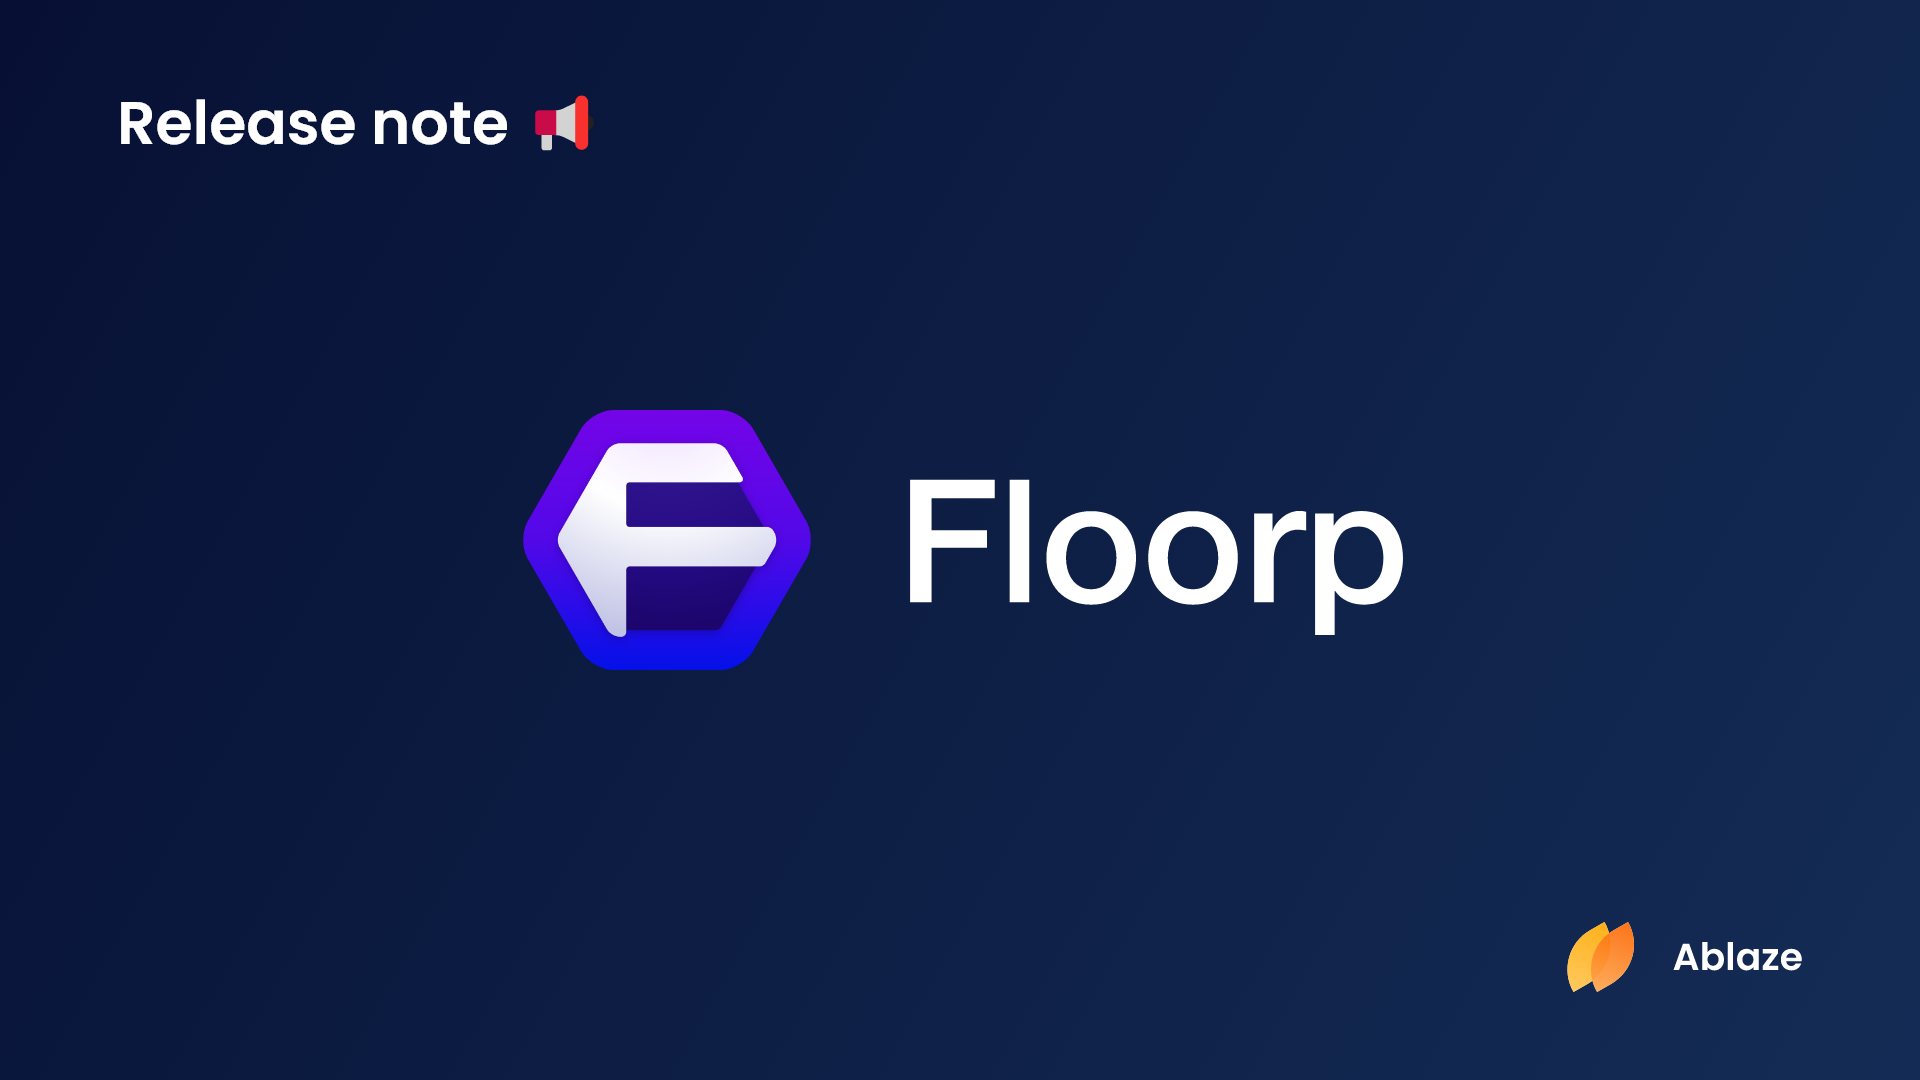 Floorp ブラウザー | バージョン 10.6.1 リリースノート